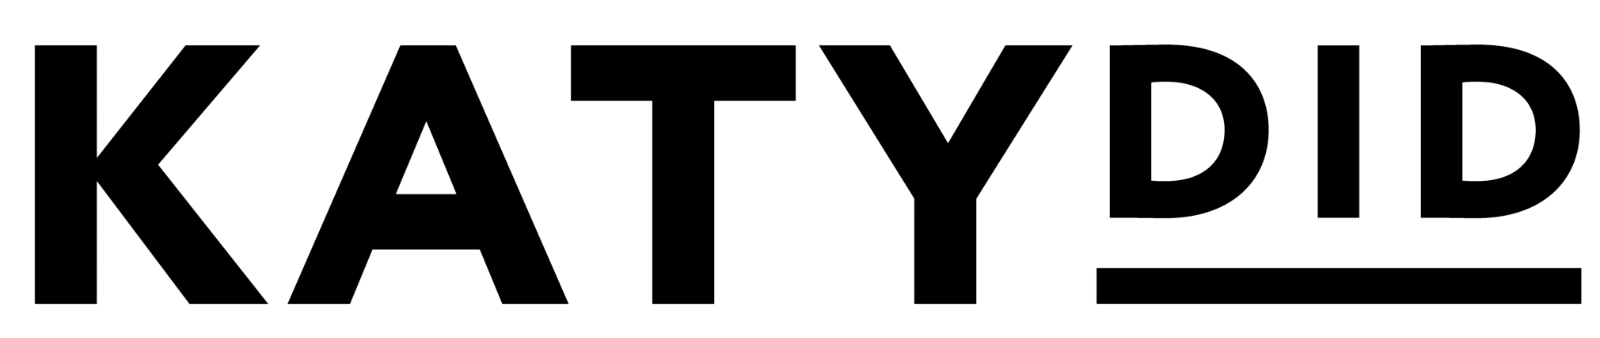 Katydid logo